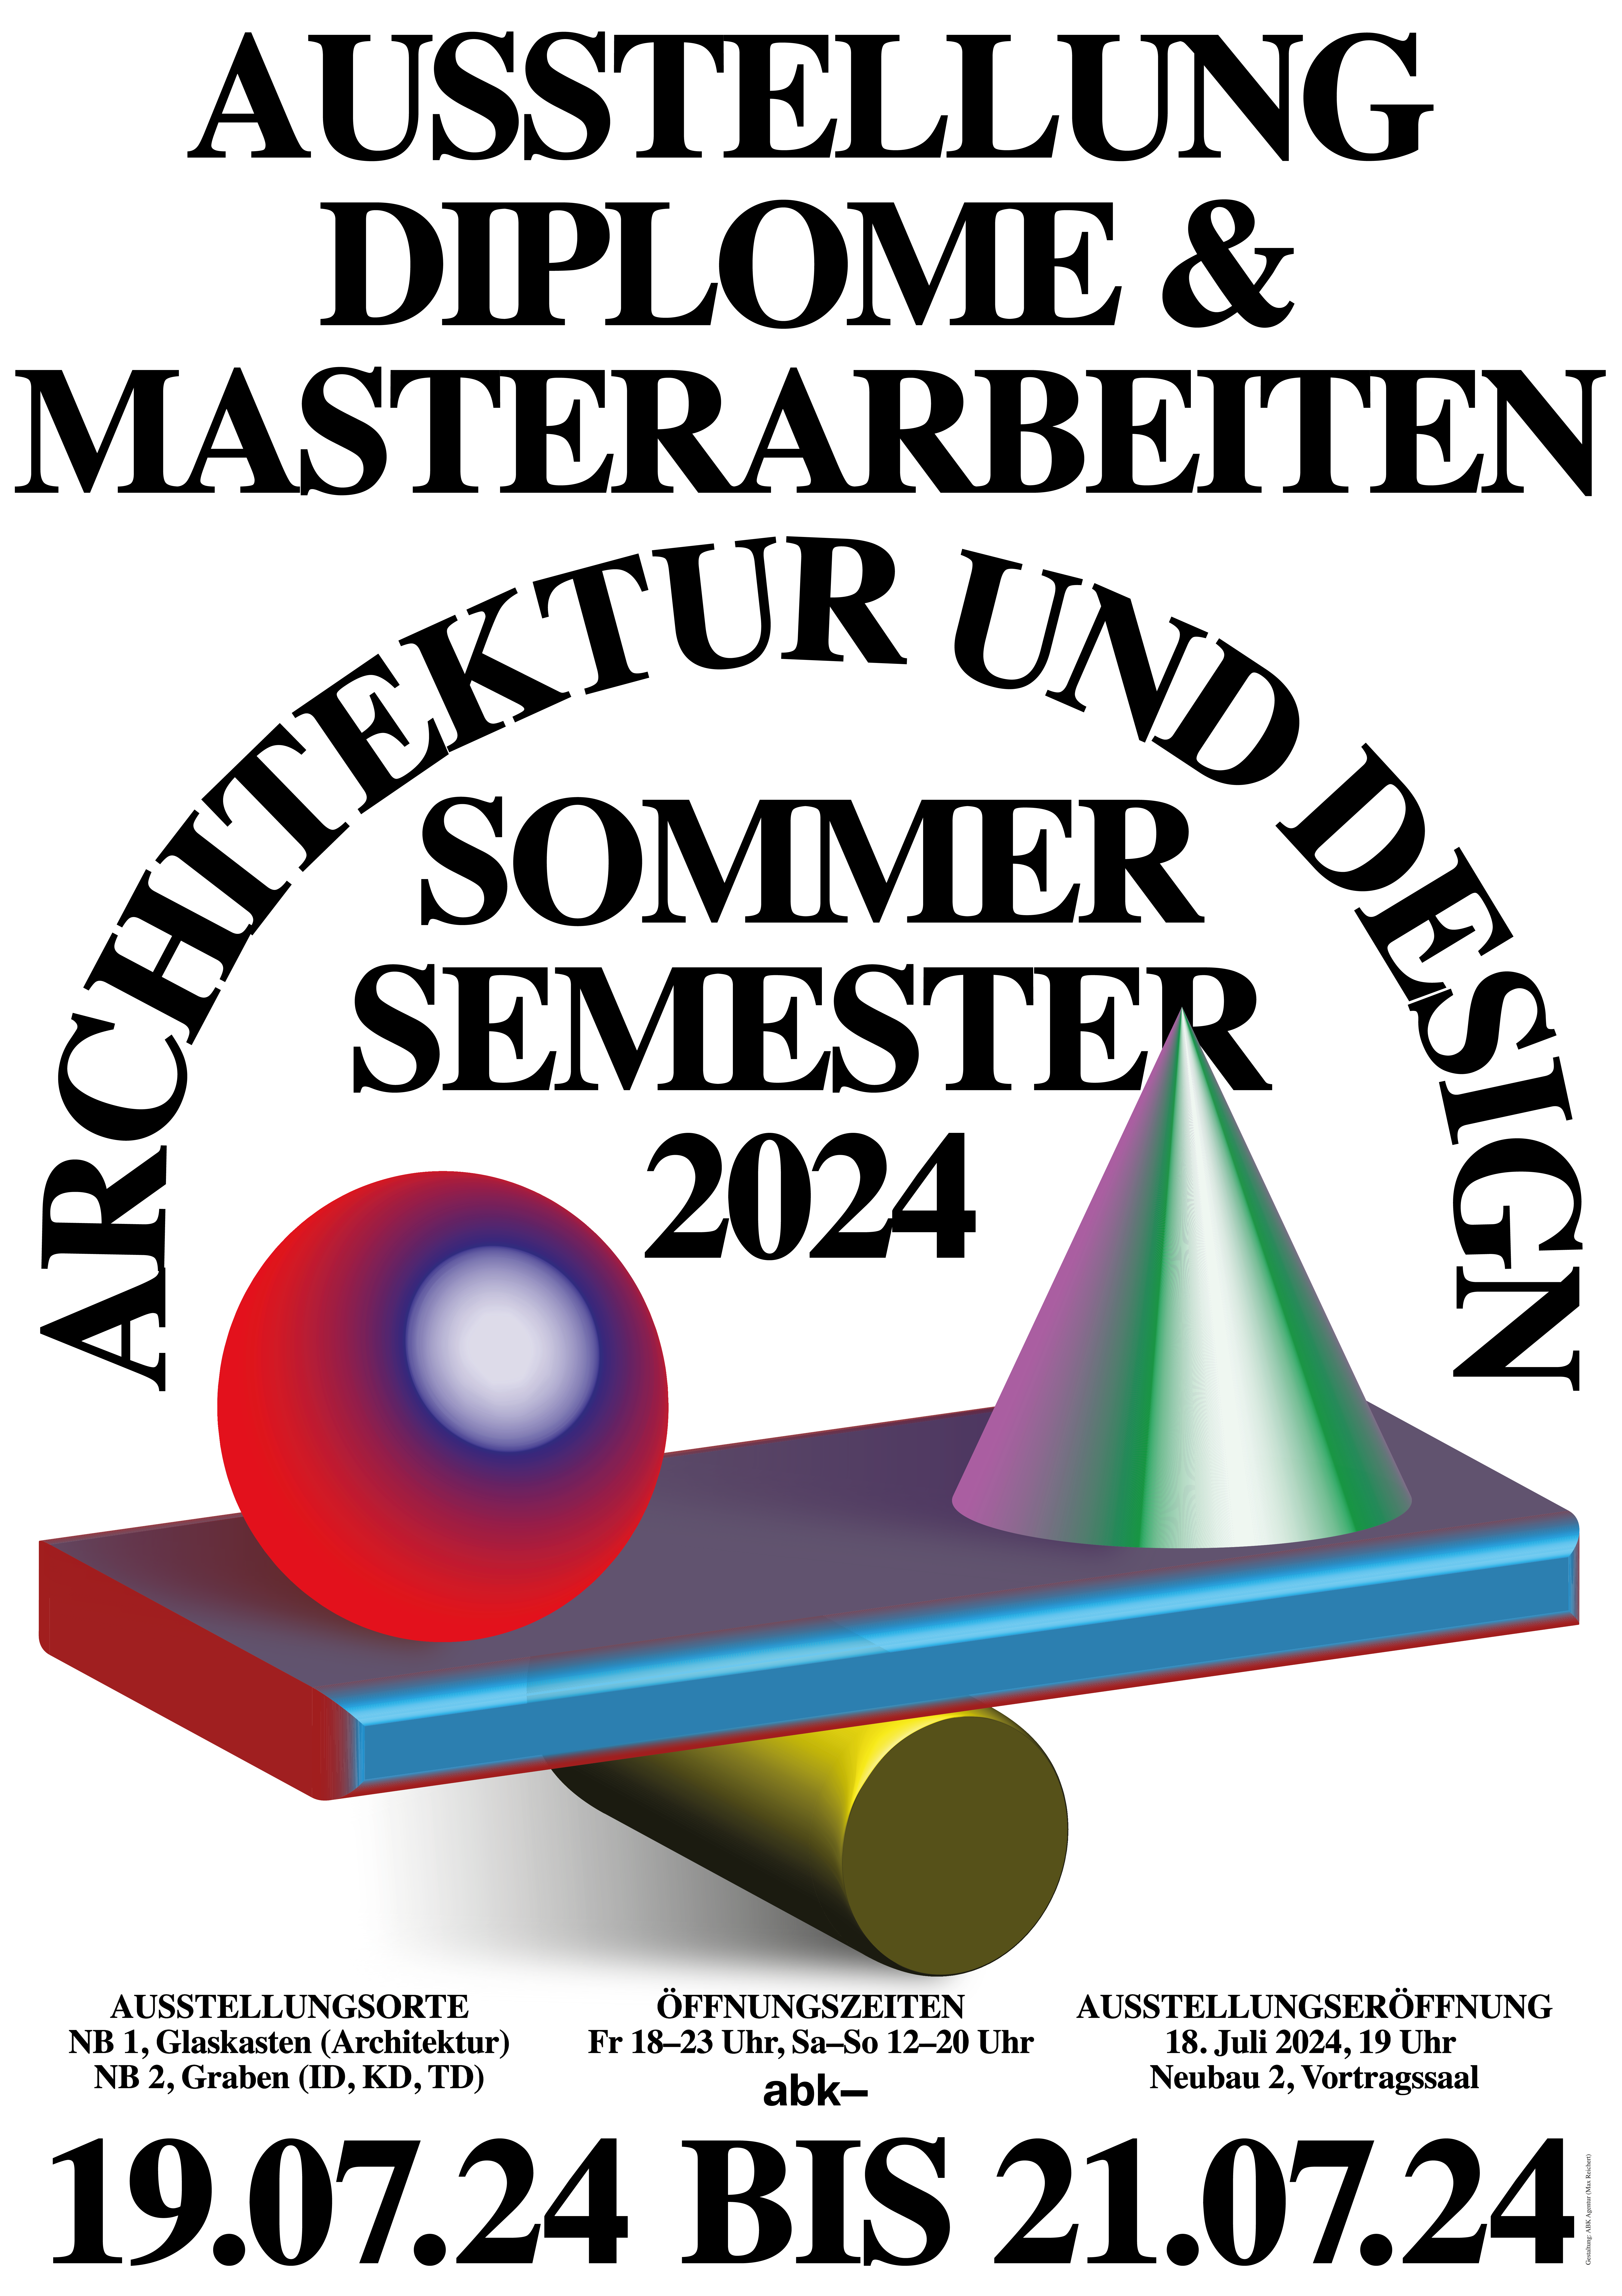 Ausstellung der Diplom- und Masterarbeiten der Fachgruppen Architektur und Design im Sommersemester 2024